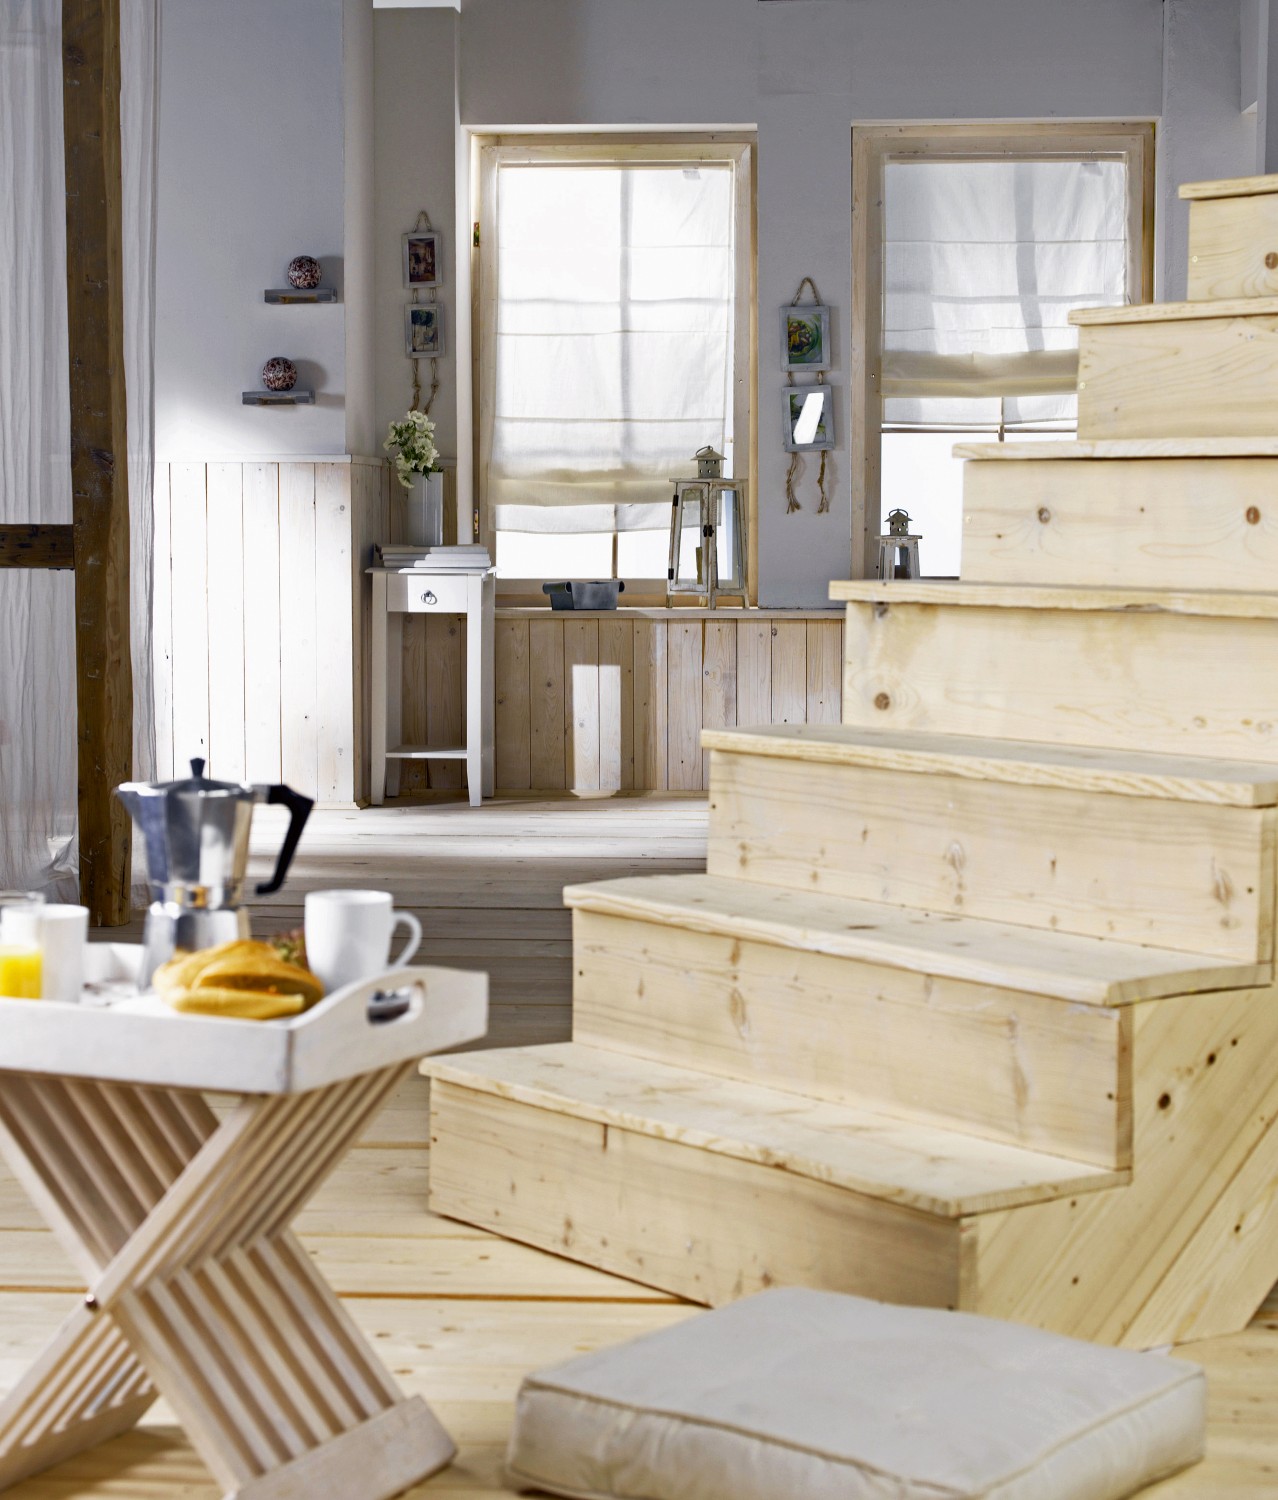 Rund ums Haus Dank hochwertiger Holzveredelung von Remmers zu perfekt gestalteten Innenräumen - News, Bild 1